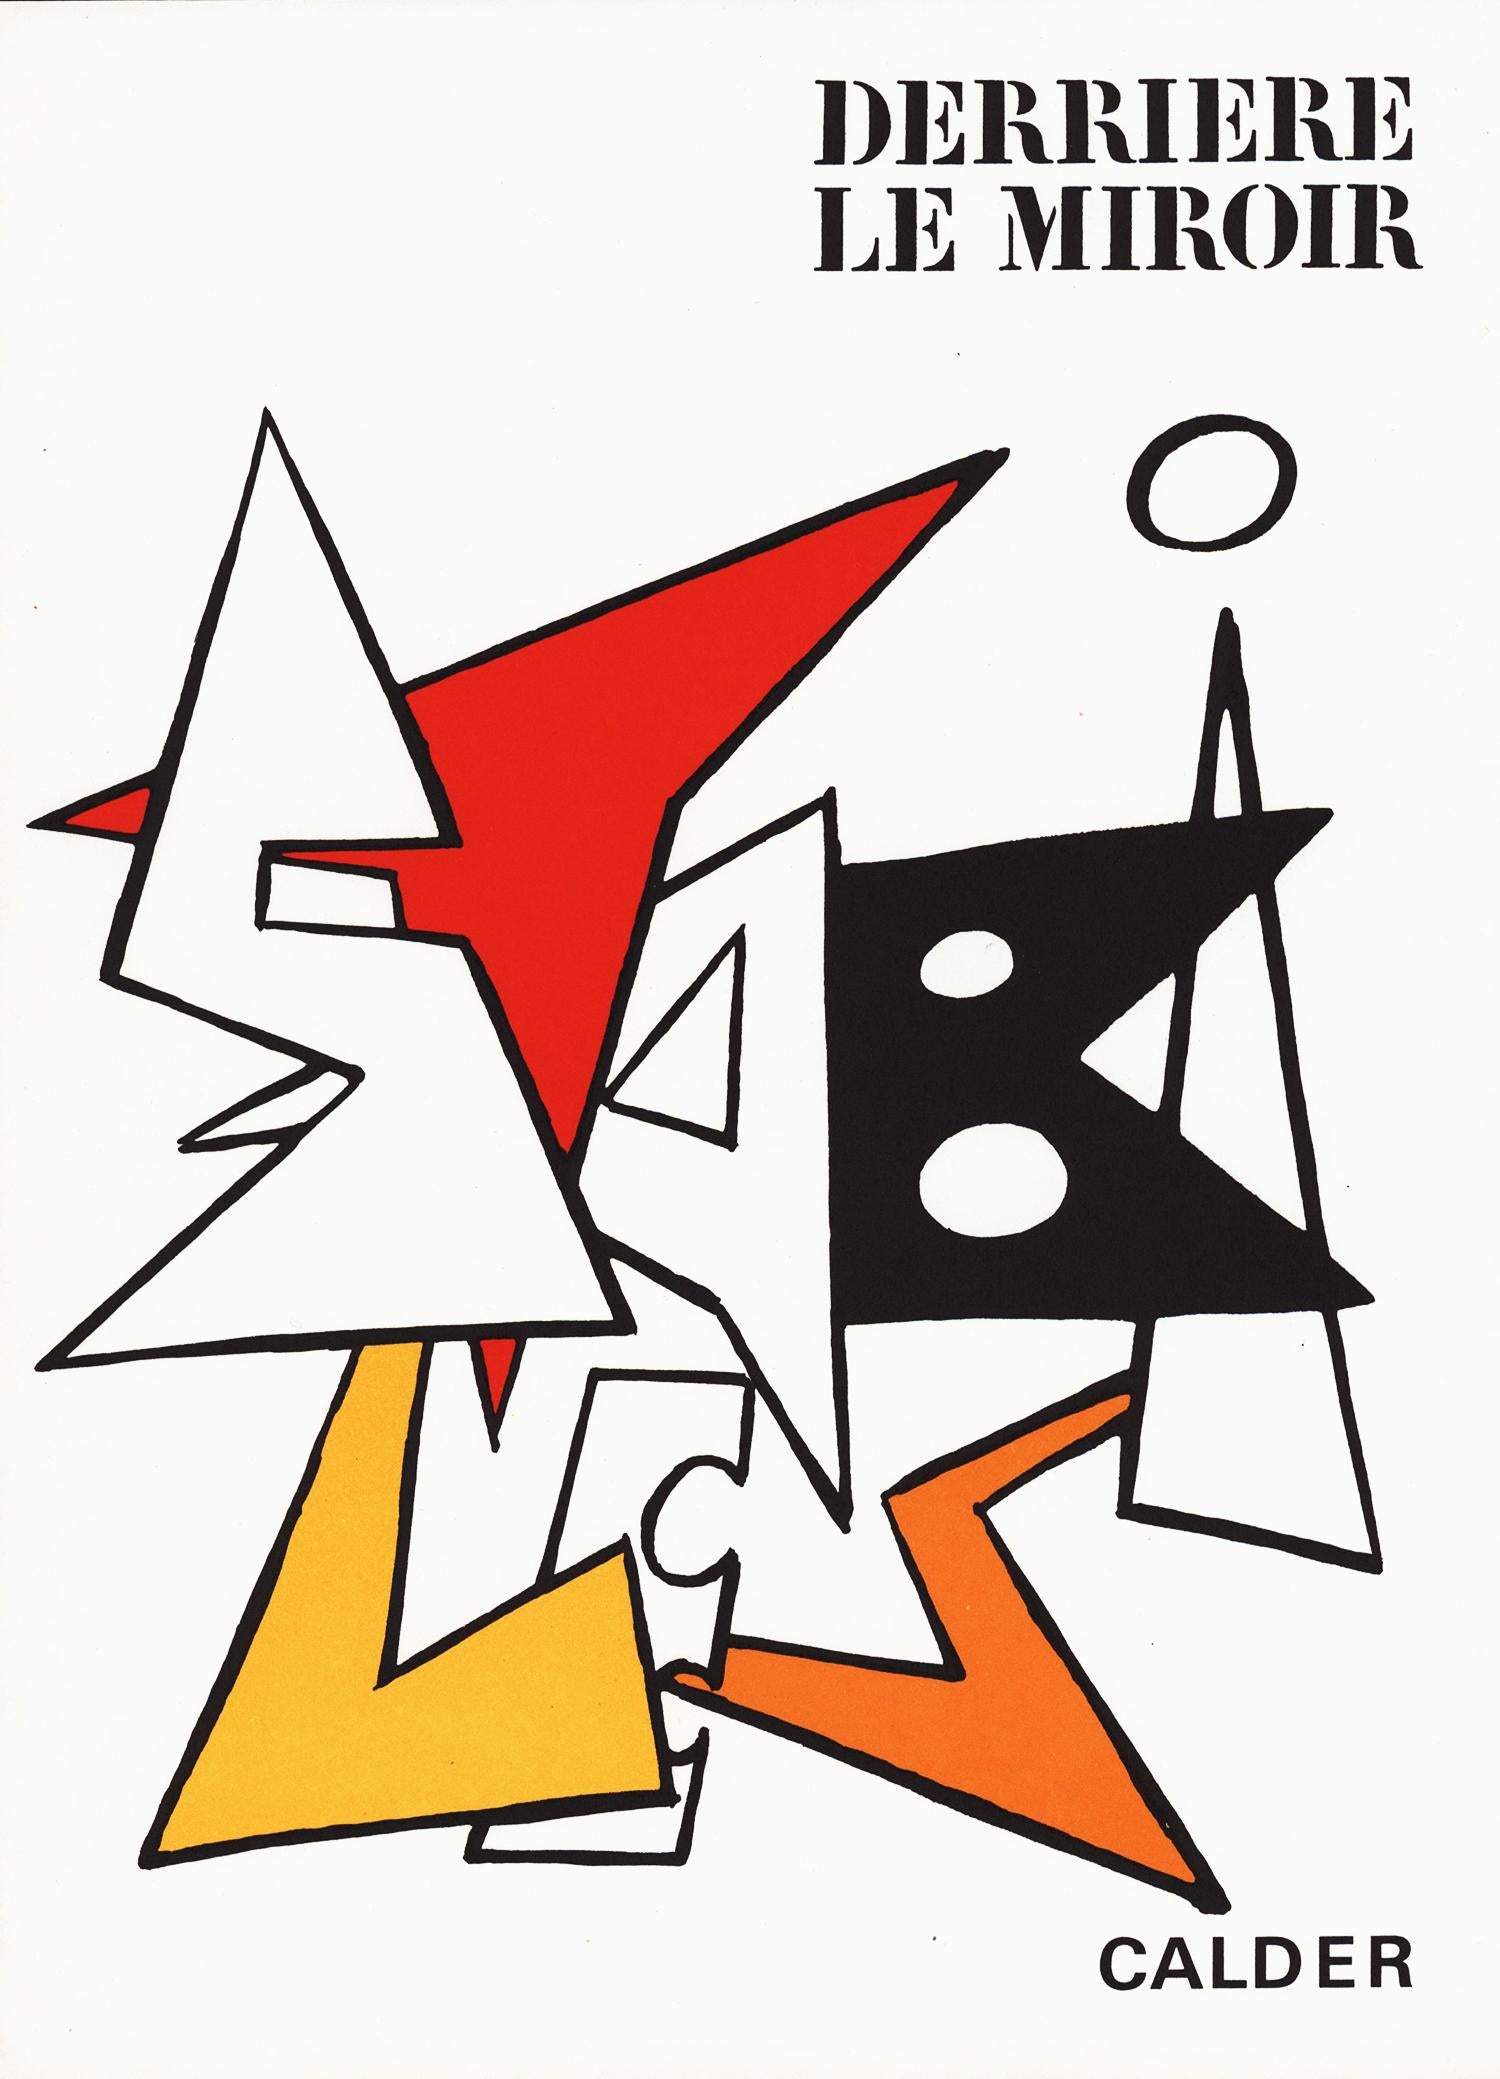 1960's Alexander Calder lithographic cover (from Derrière le miroir)